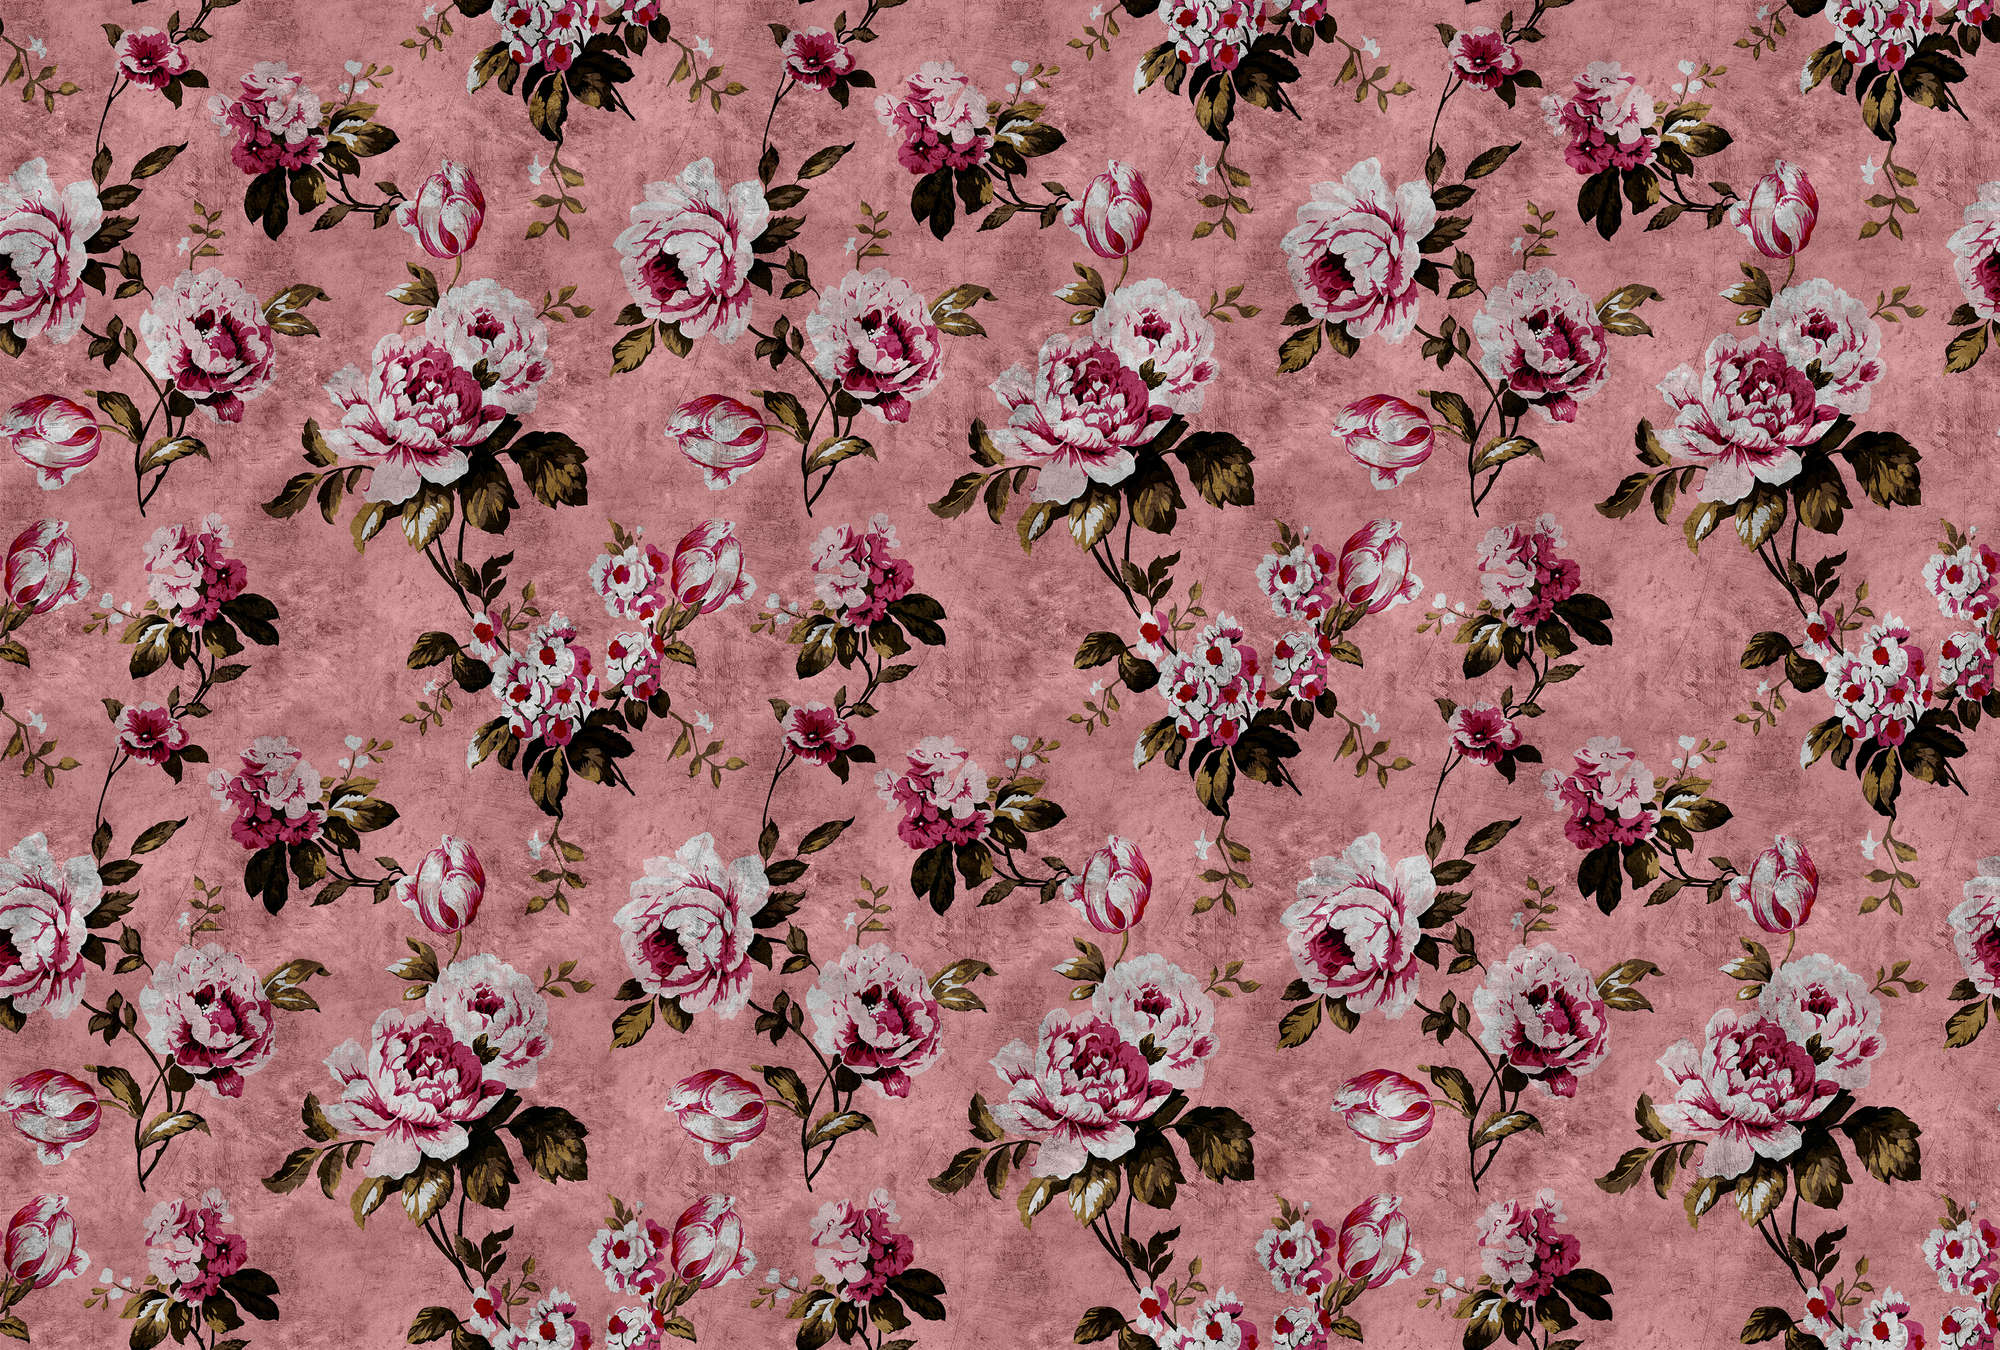             Wilde rozen 4 - Rozen fotobehang in retro look, roze in krasstructuur - Roze, Rood | Matte gladde vlieseline
        